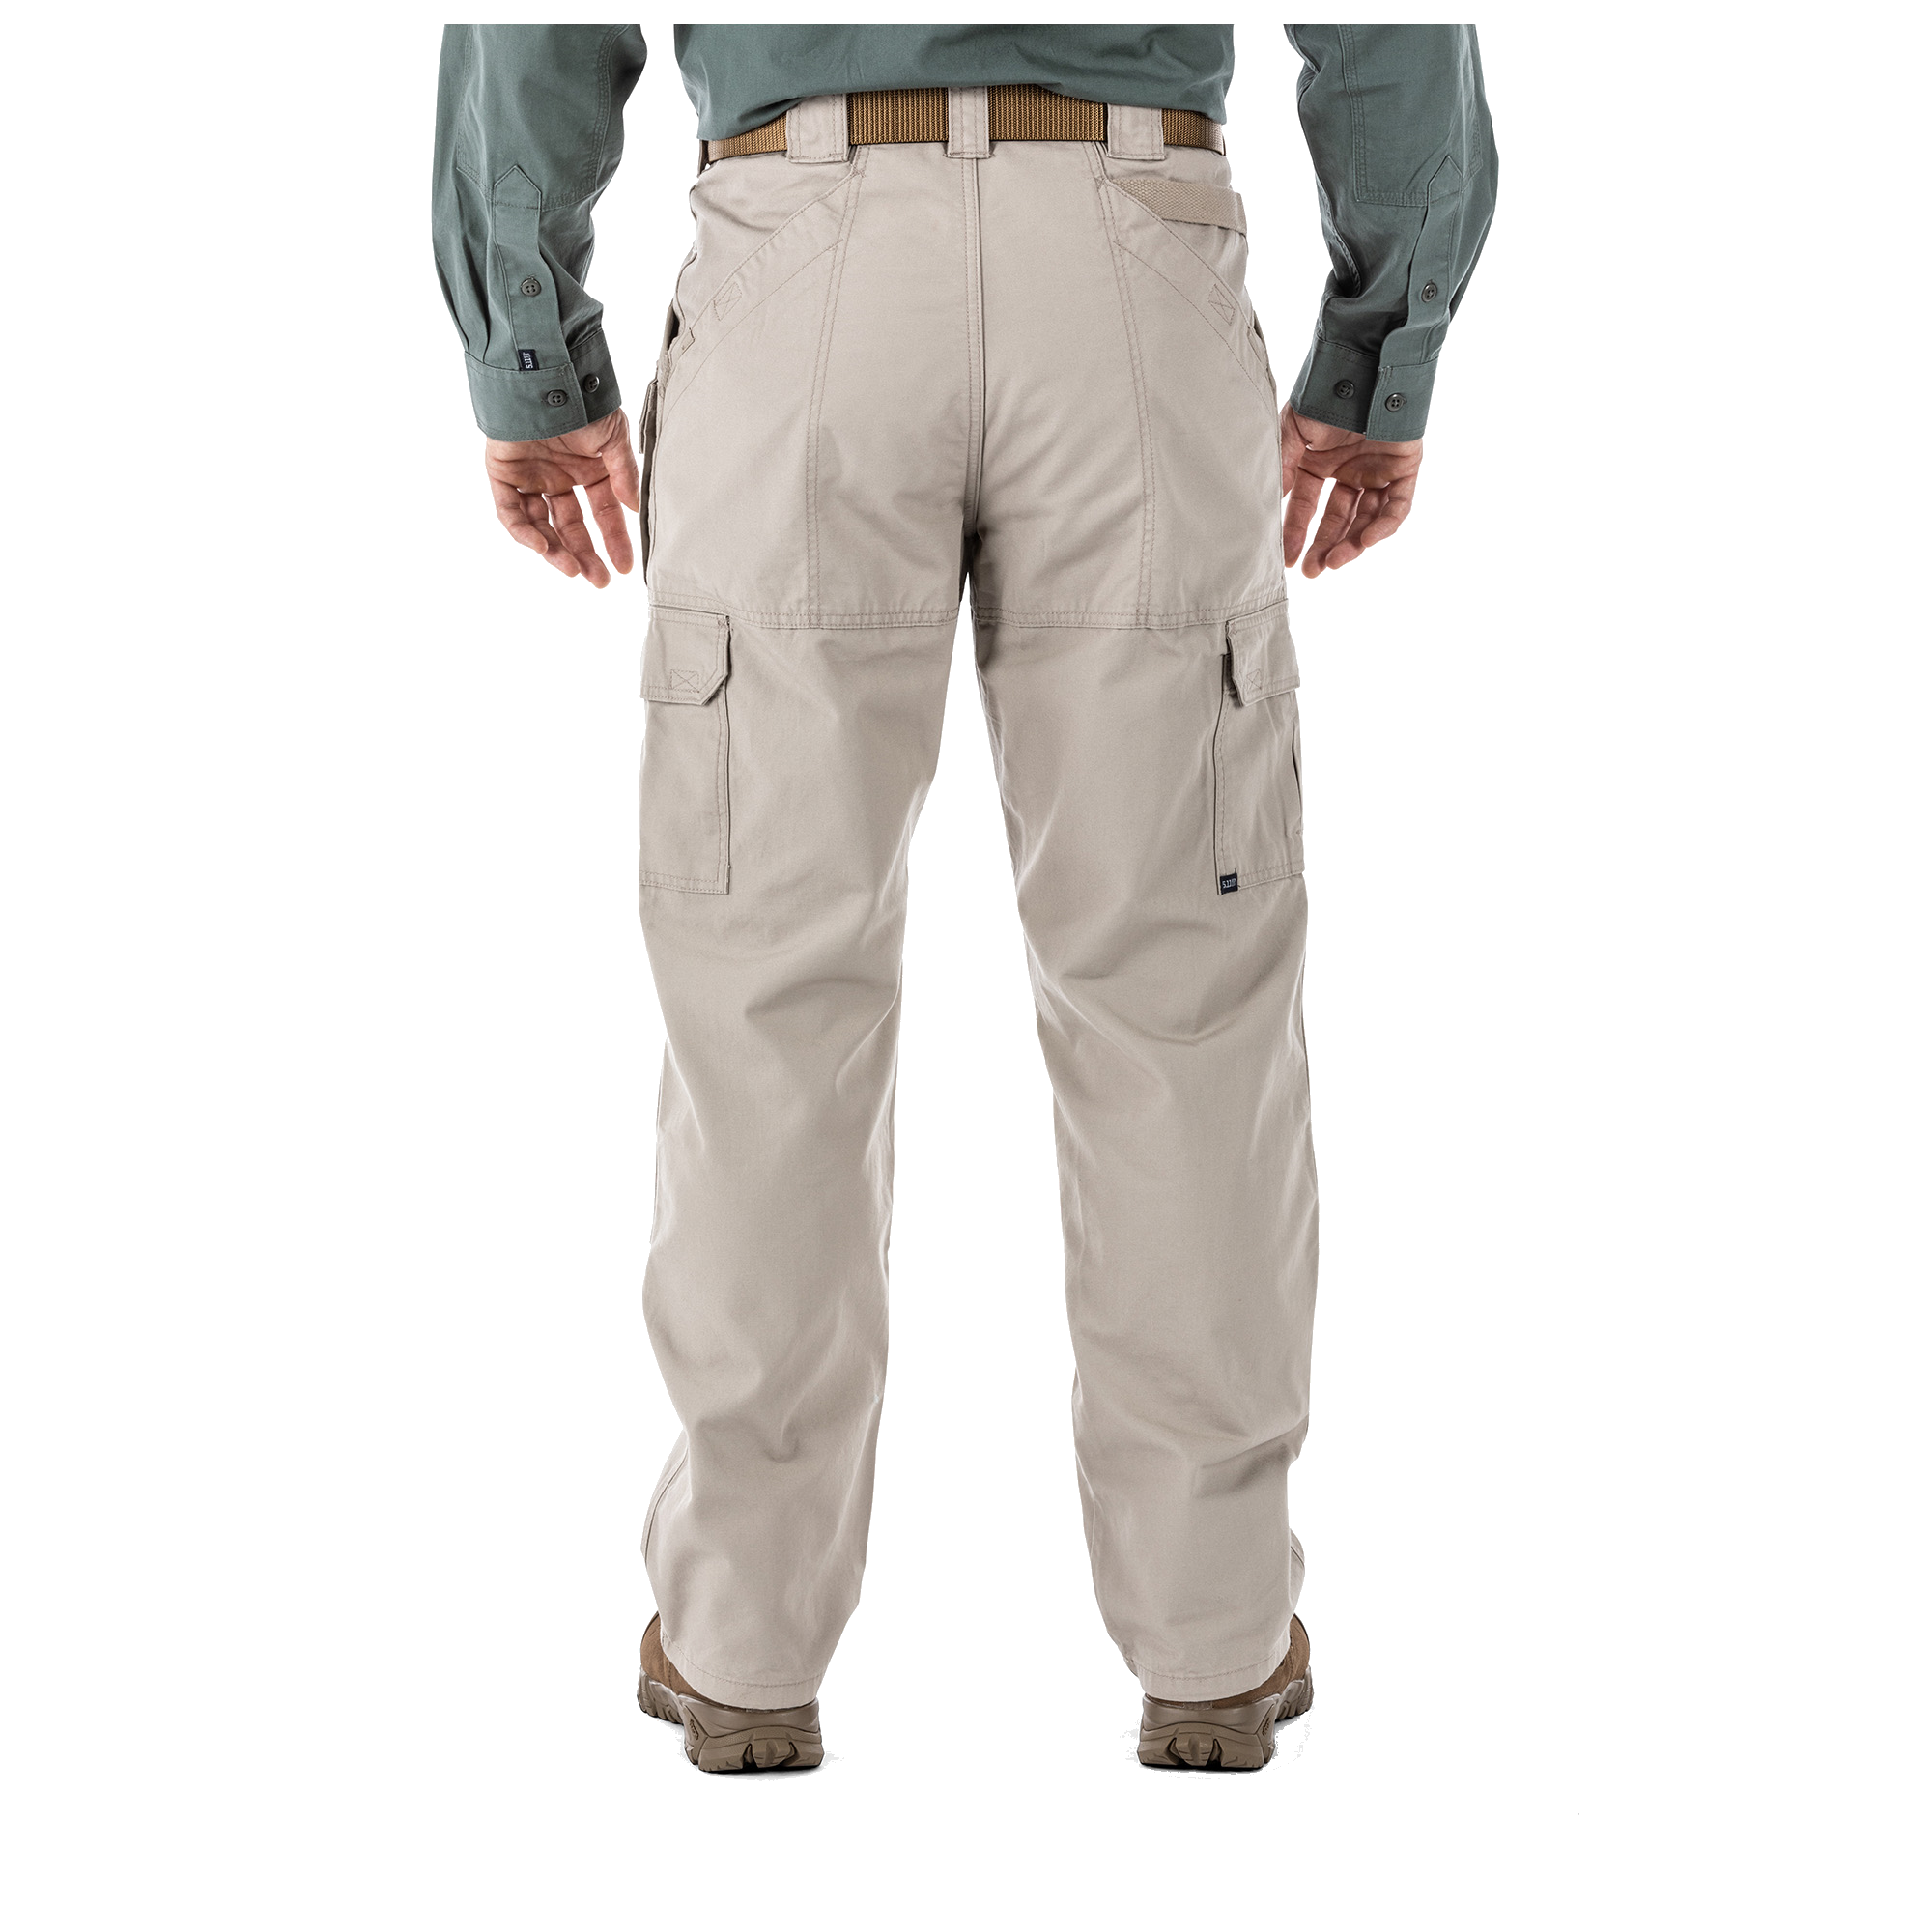 Men's 5.11 Tactical Cargo Pants